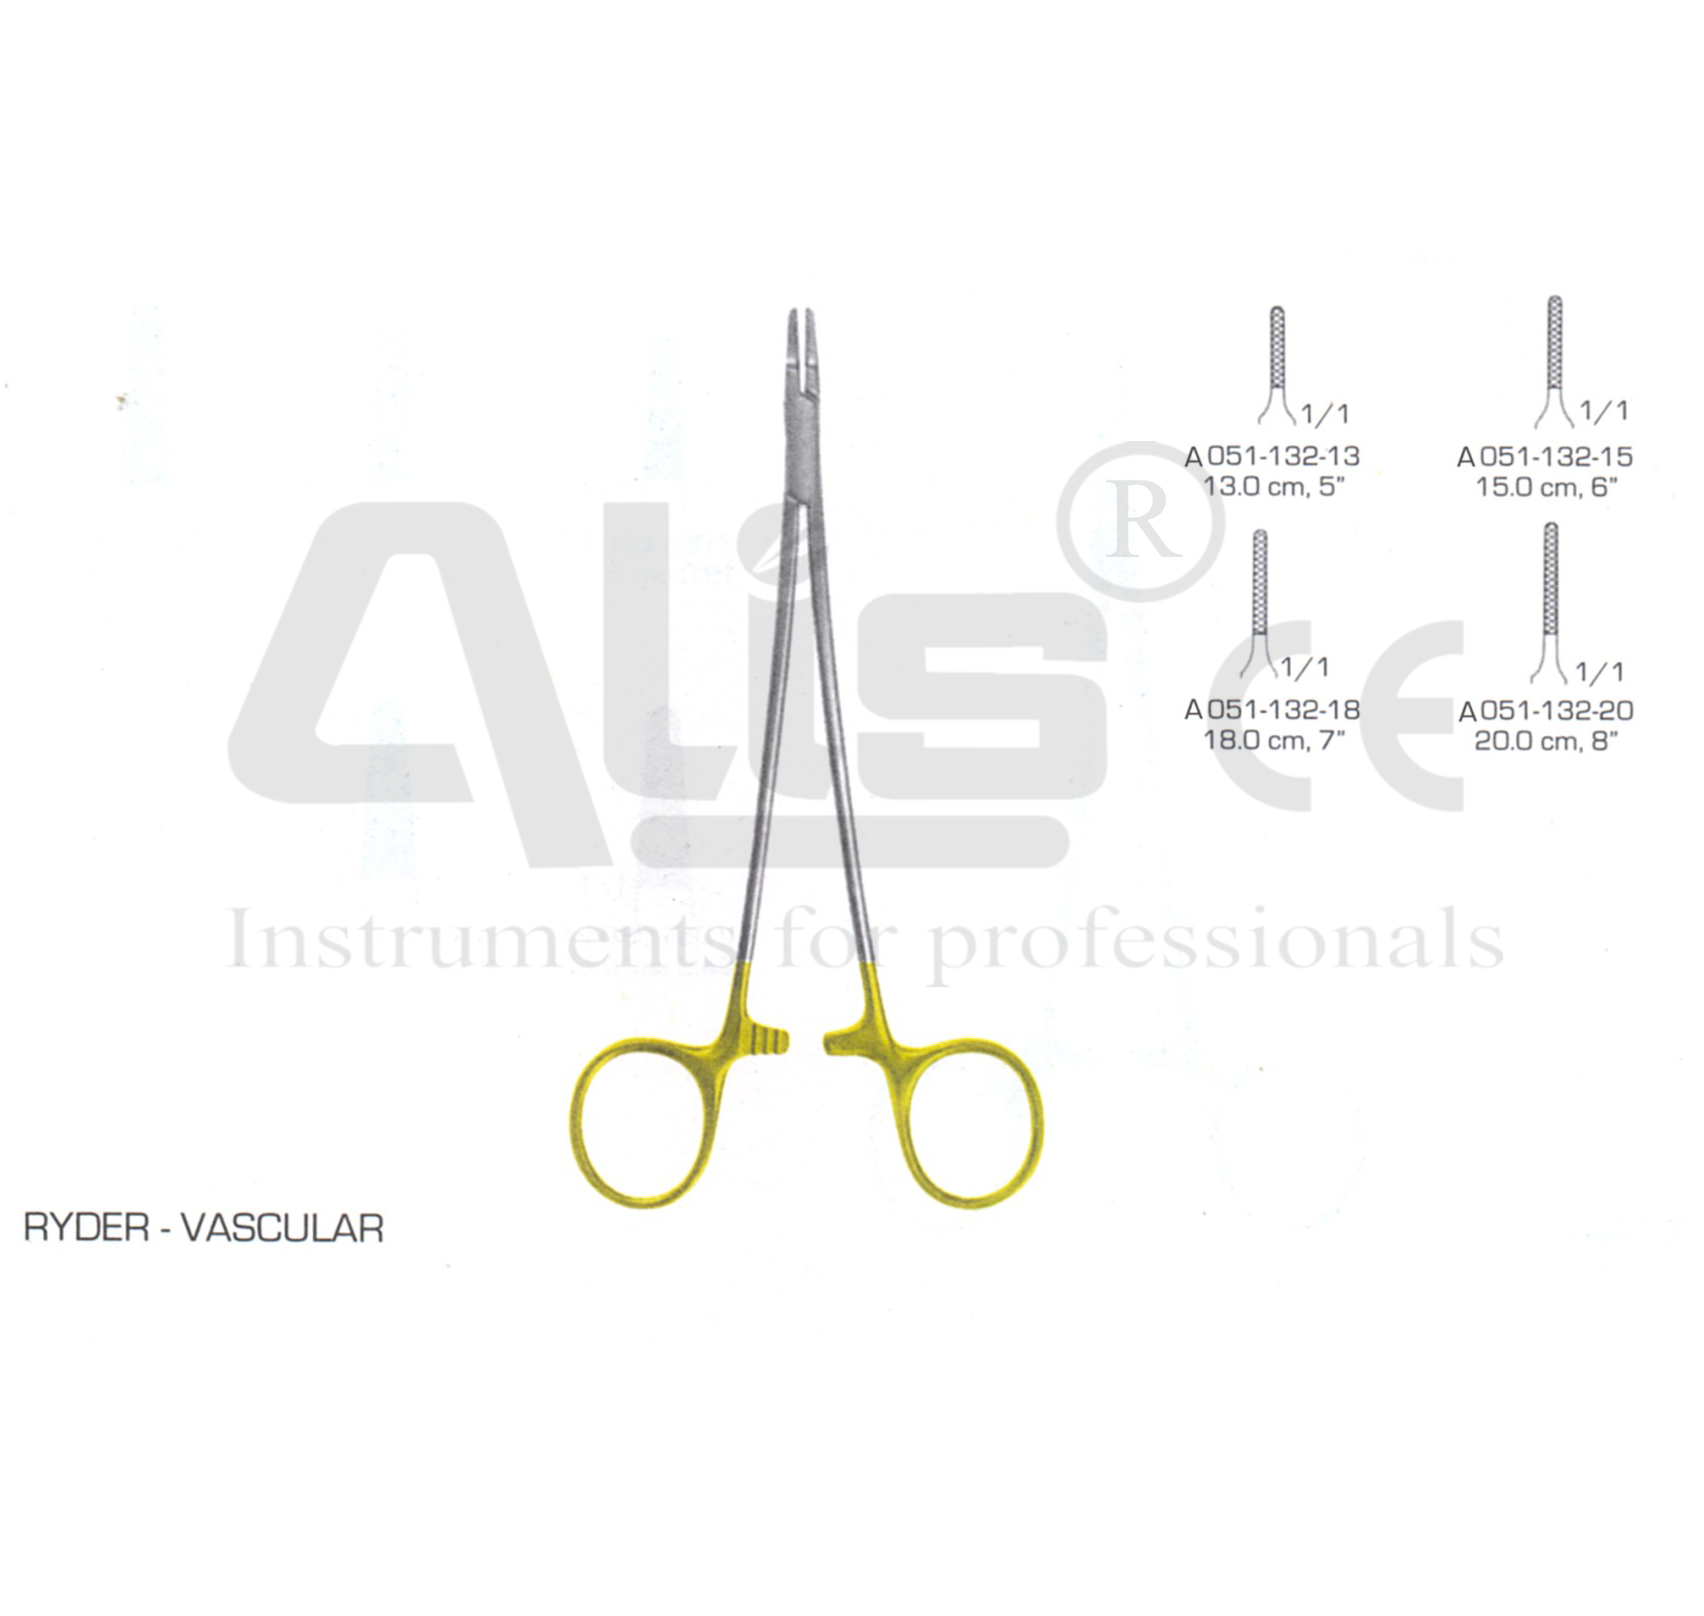 Hegar Vascular needle holder with tungsten carbide inserts